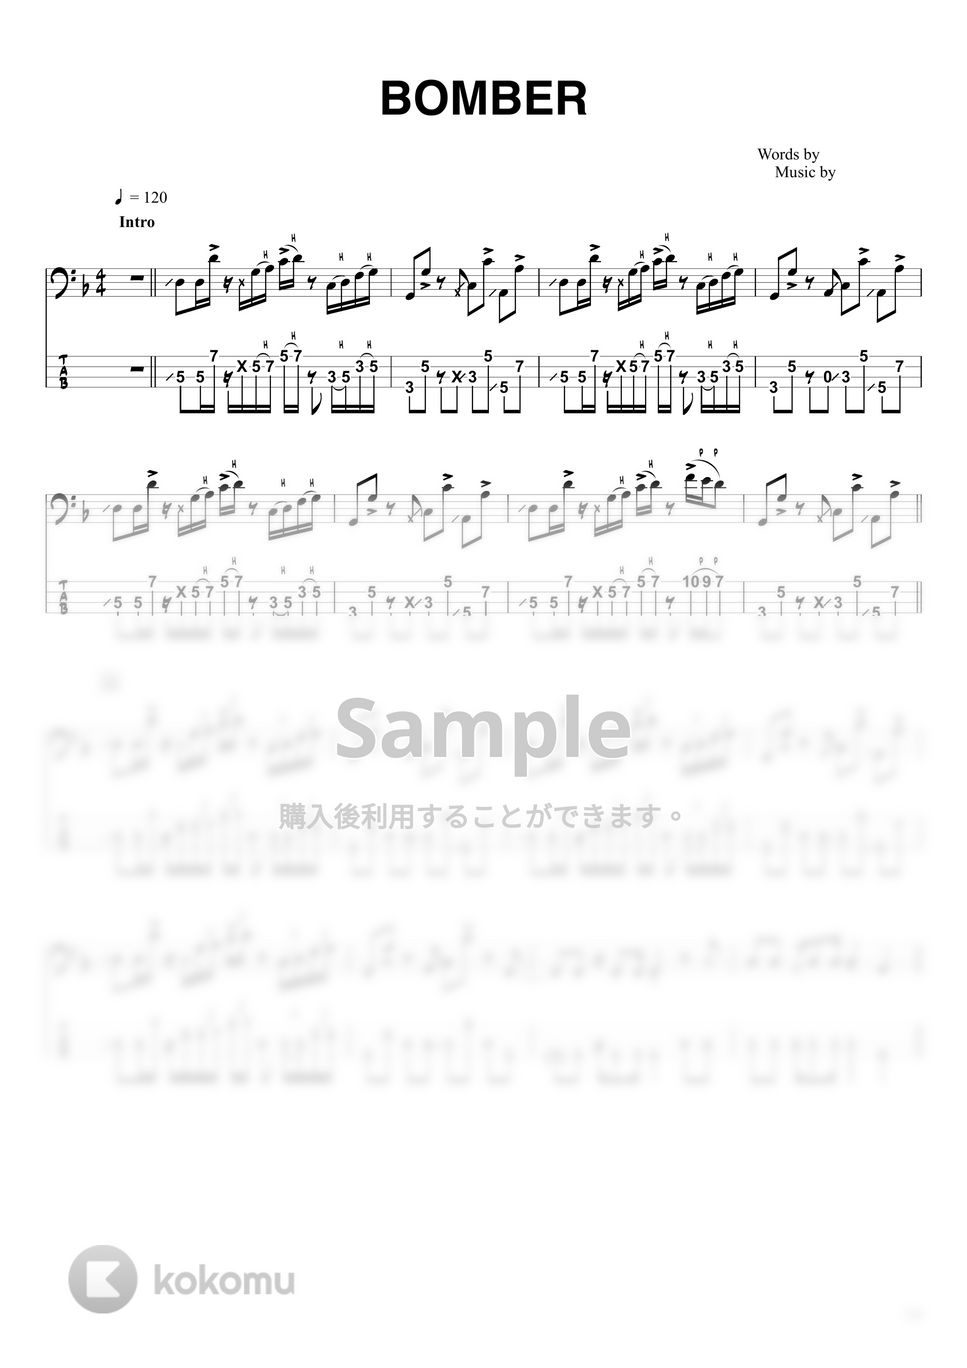 山下 達郎 - BOMBER (ベースTAB譜☆4弦ベース対応) by swbass